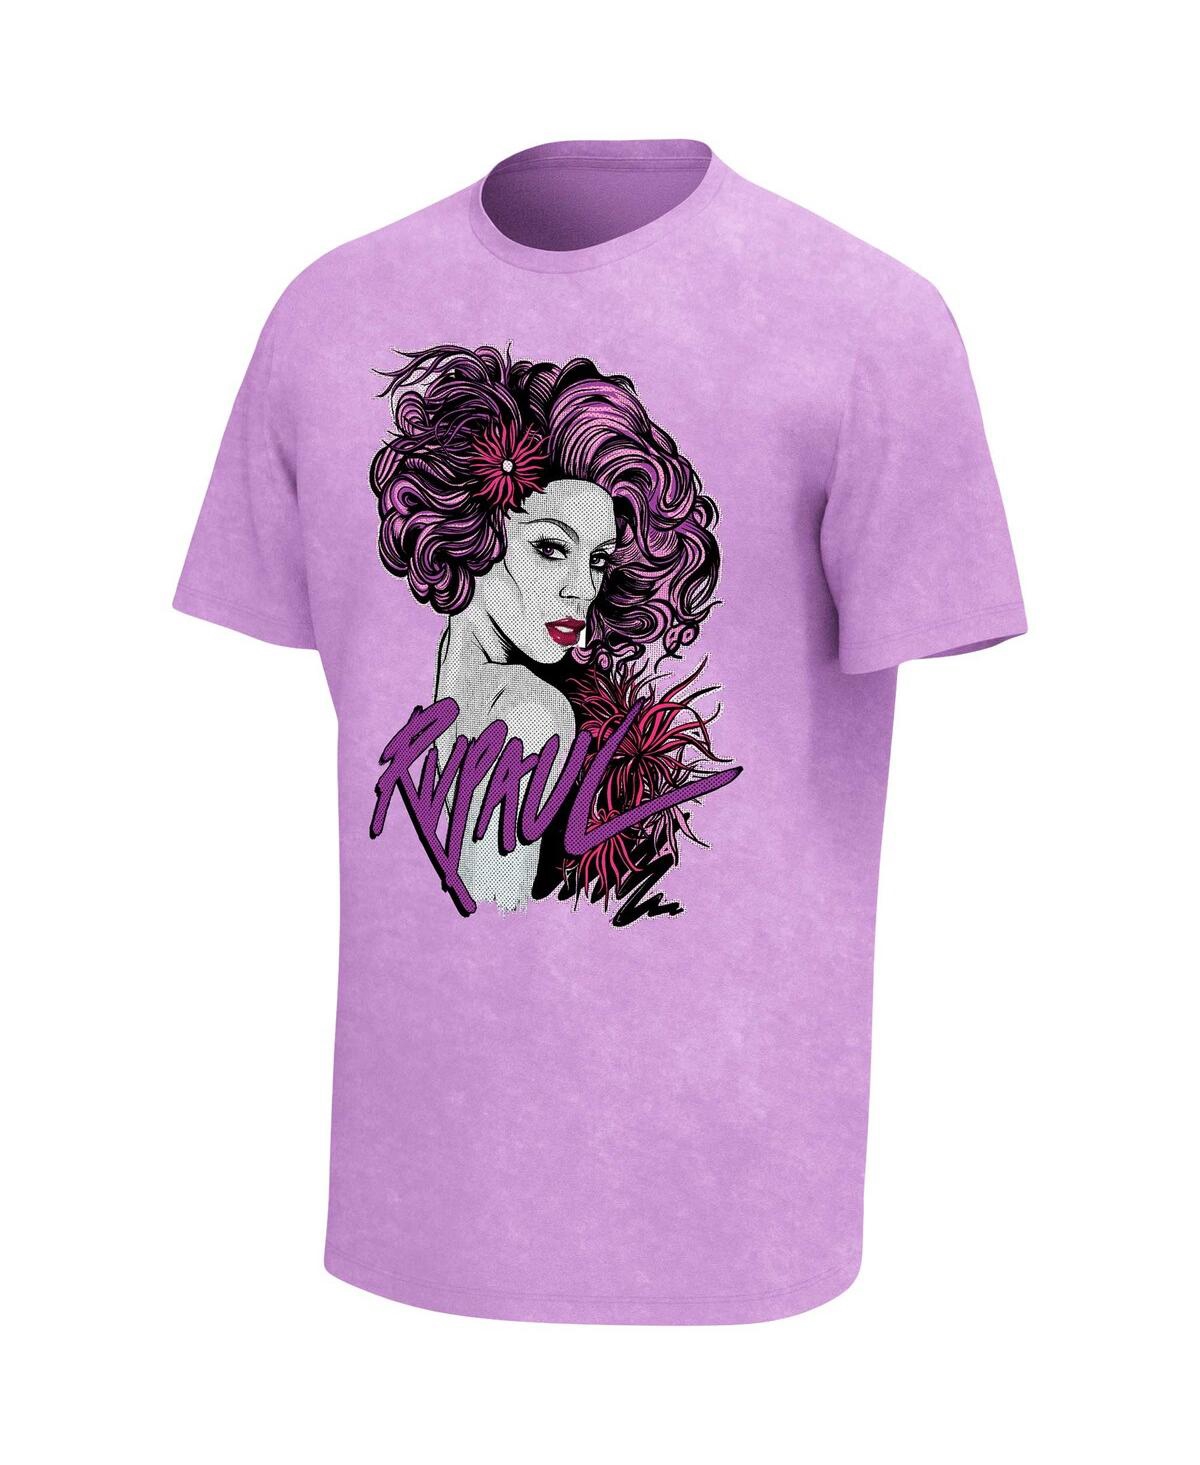 Shop Philcos Men's Rupaul Purple Washed T-shirt